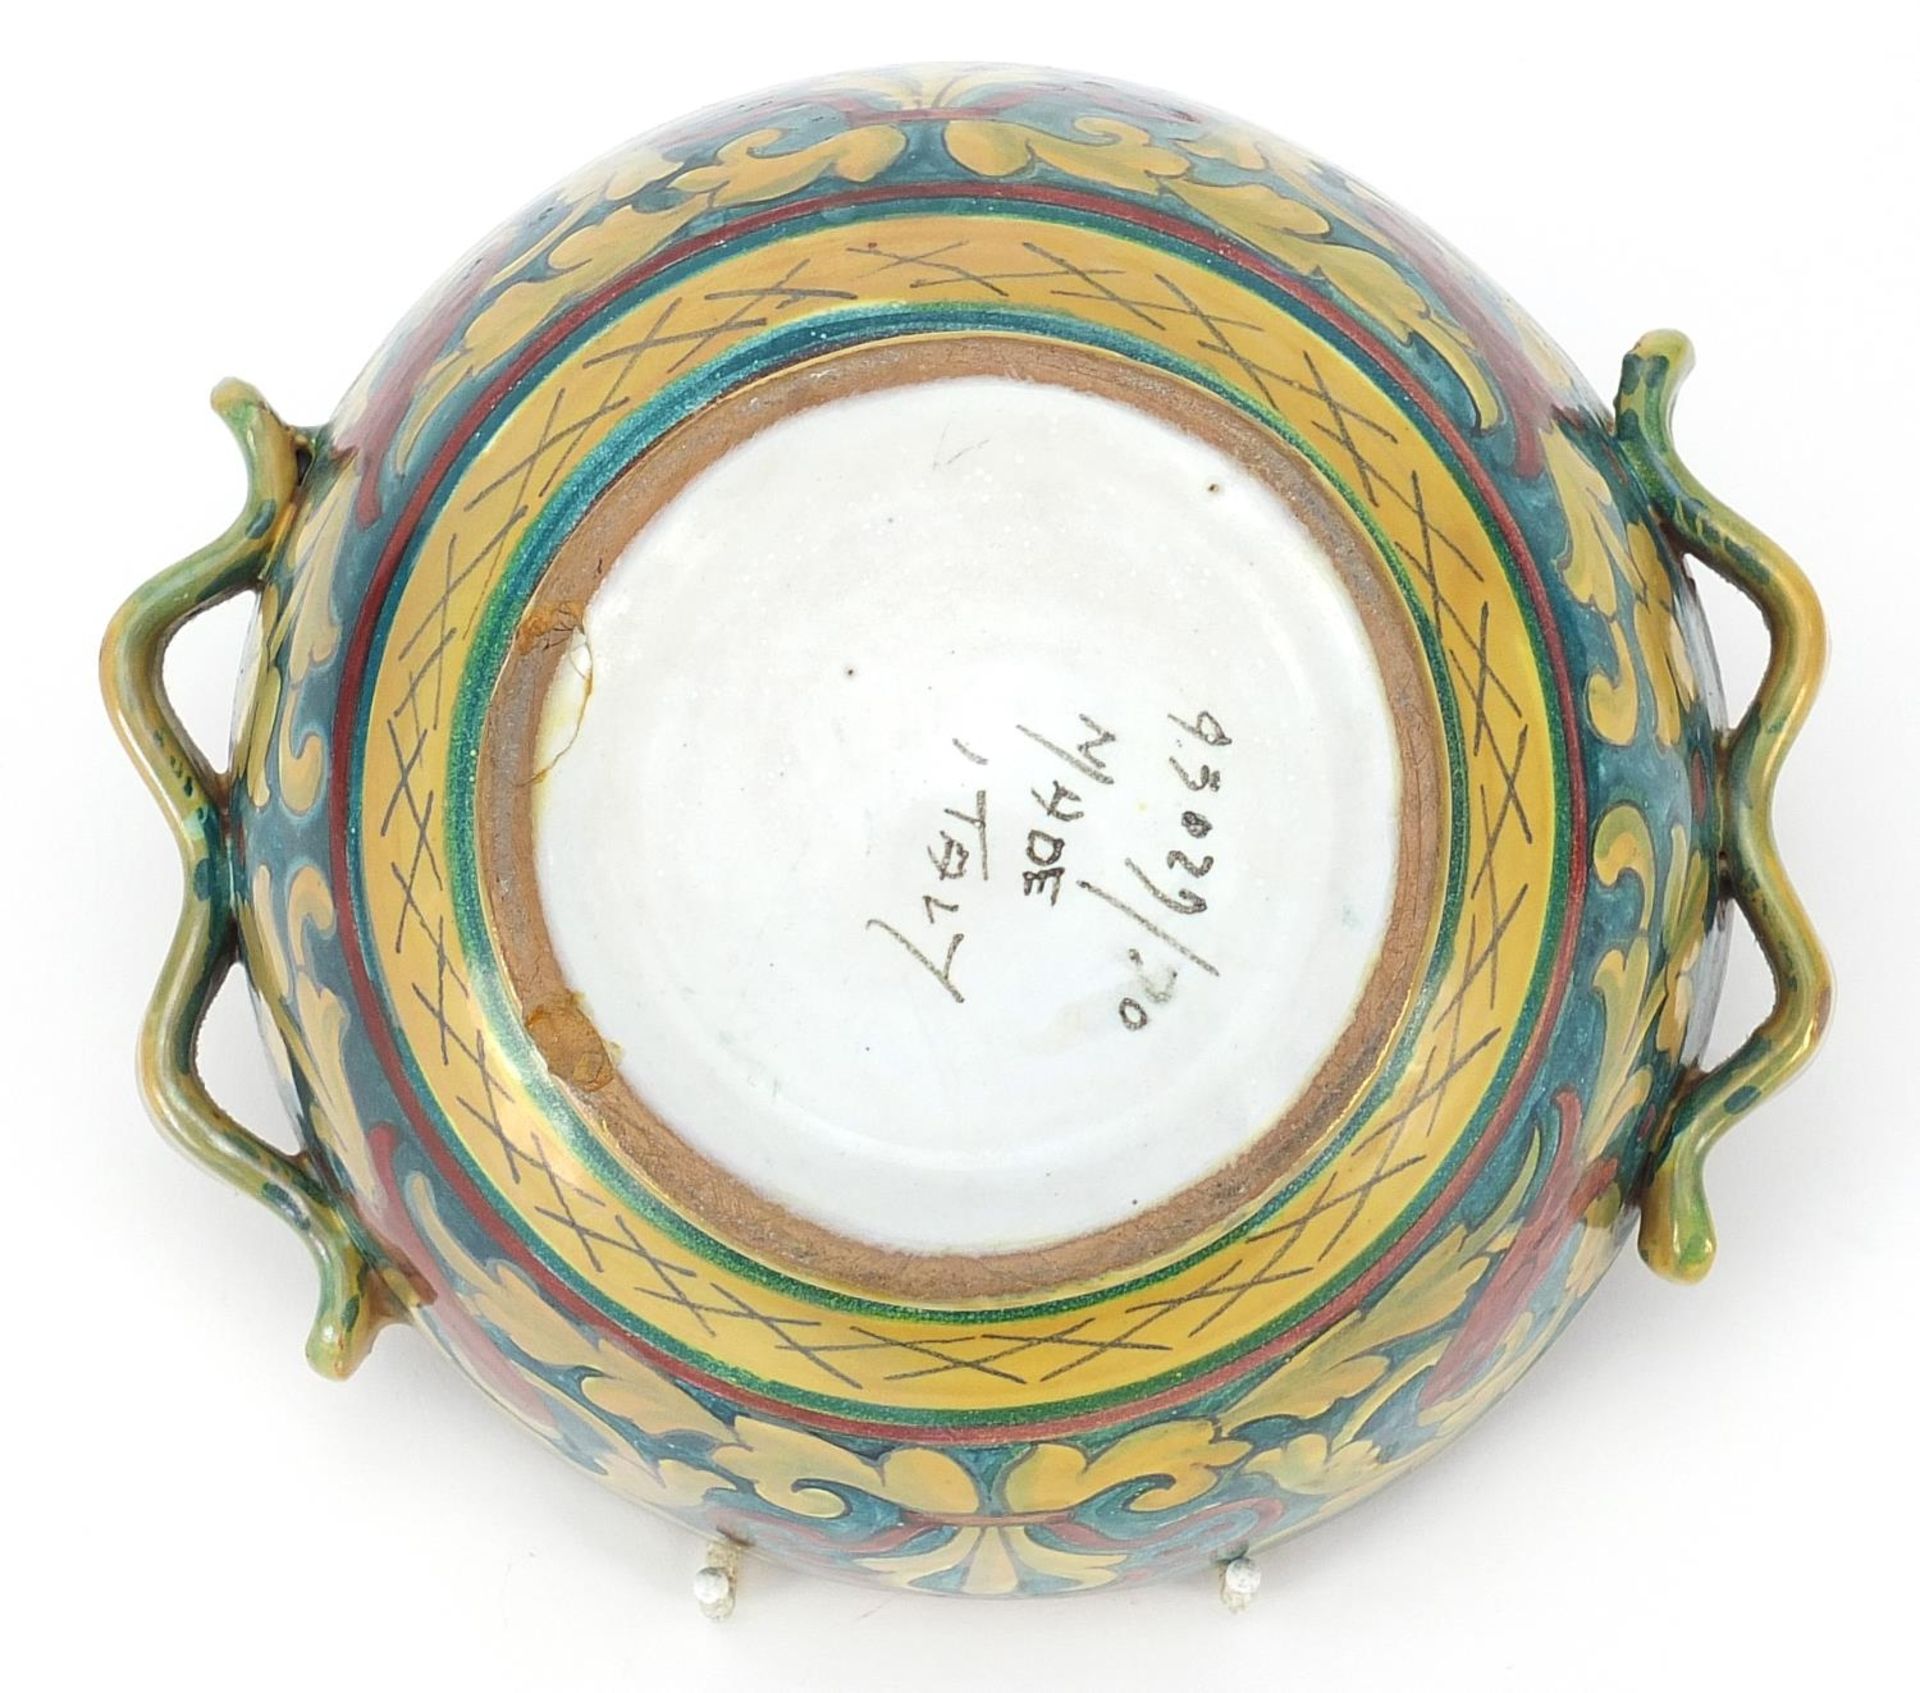 Italian lustre bowl in the style of William de Morgan, 18.5cm in diameter - Image 5 of 6